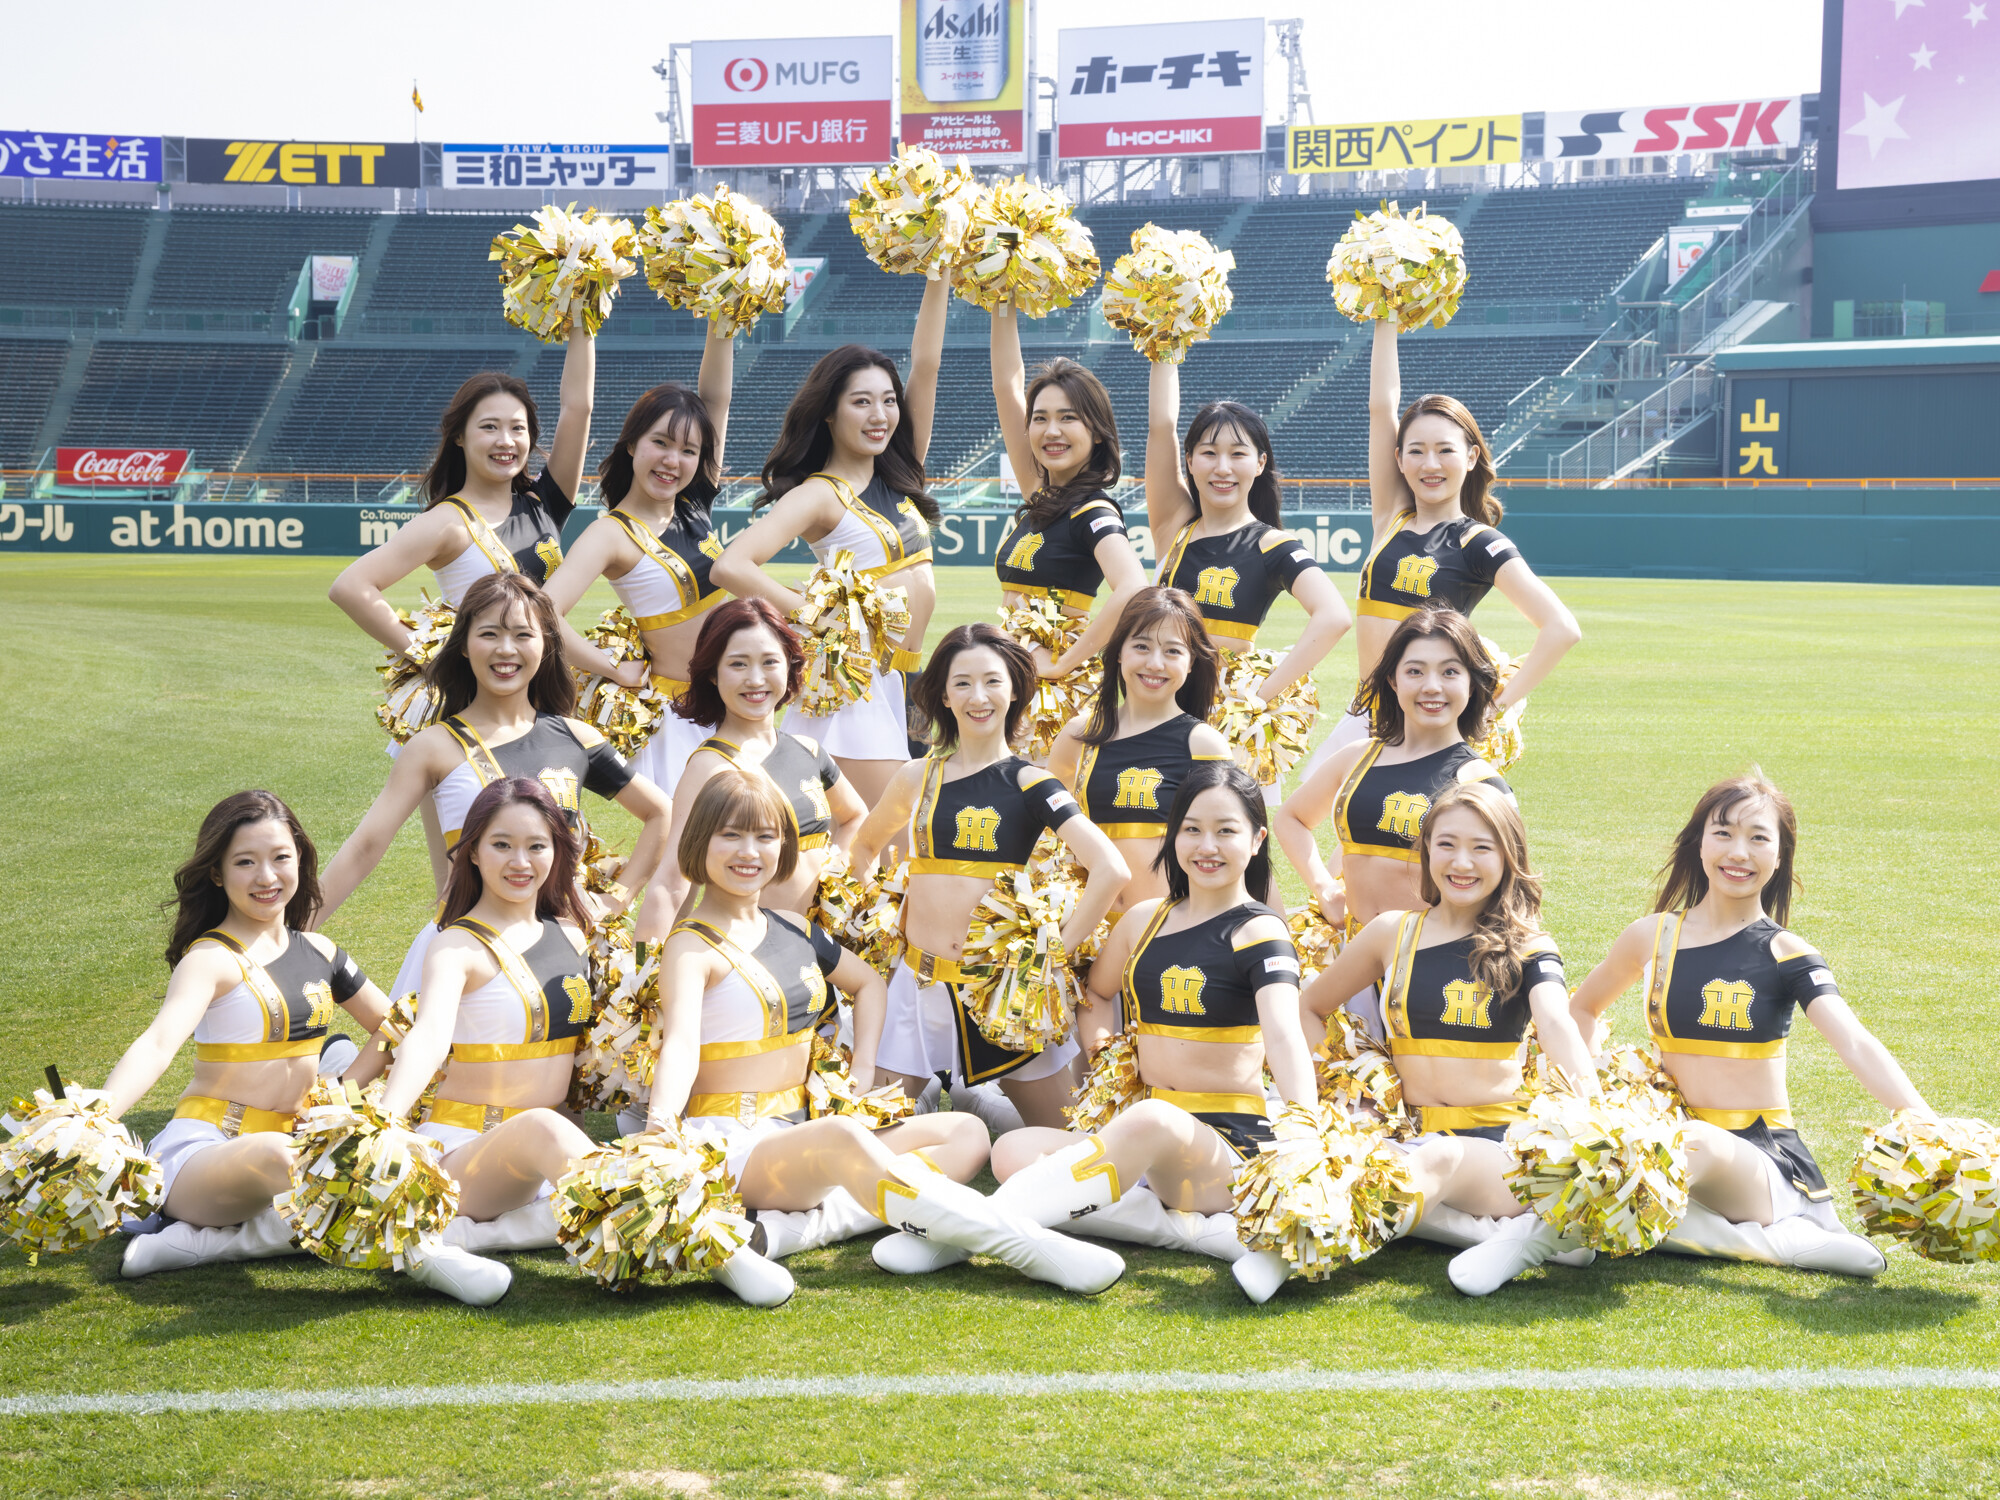 阪神タイガース「TigersGirls」全員インタビュー「パフォーマンスで連覇をあと押しします!」